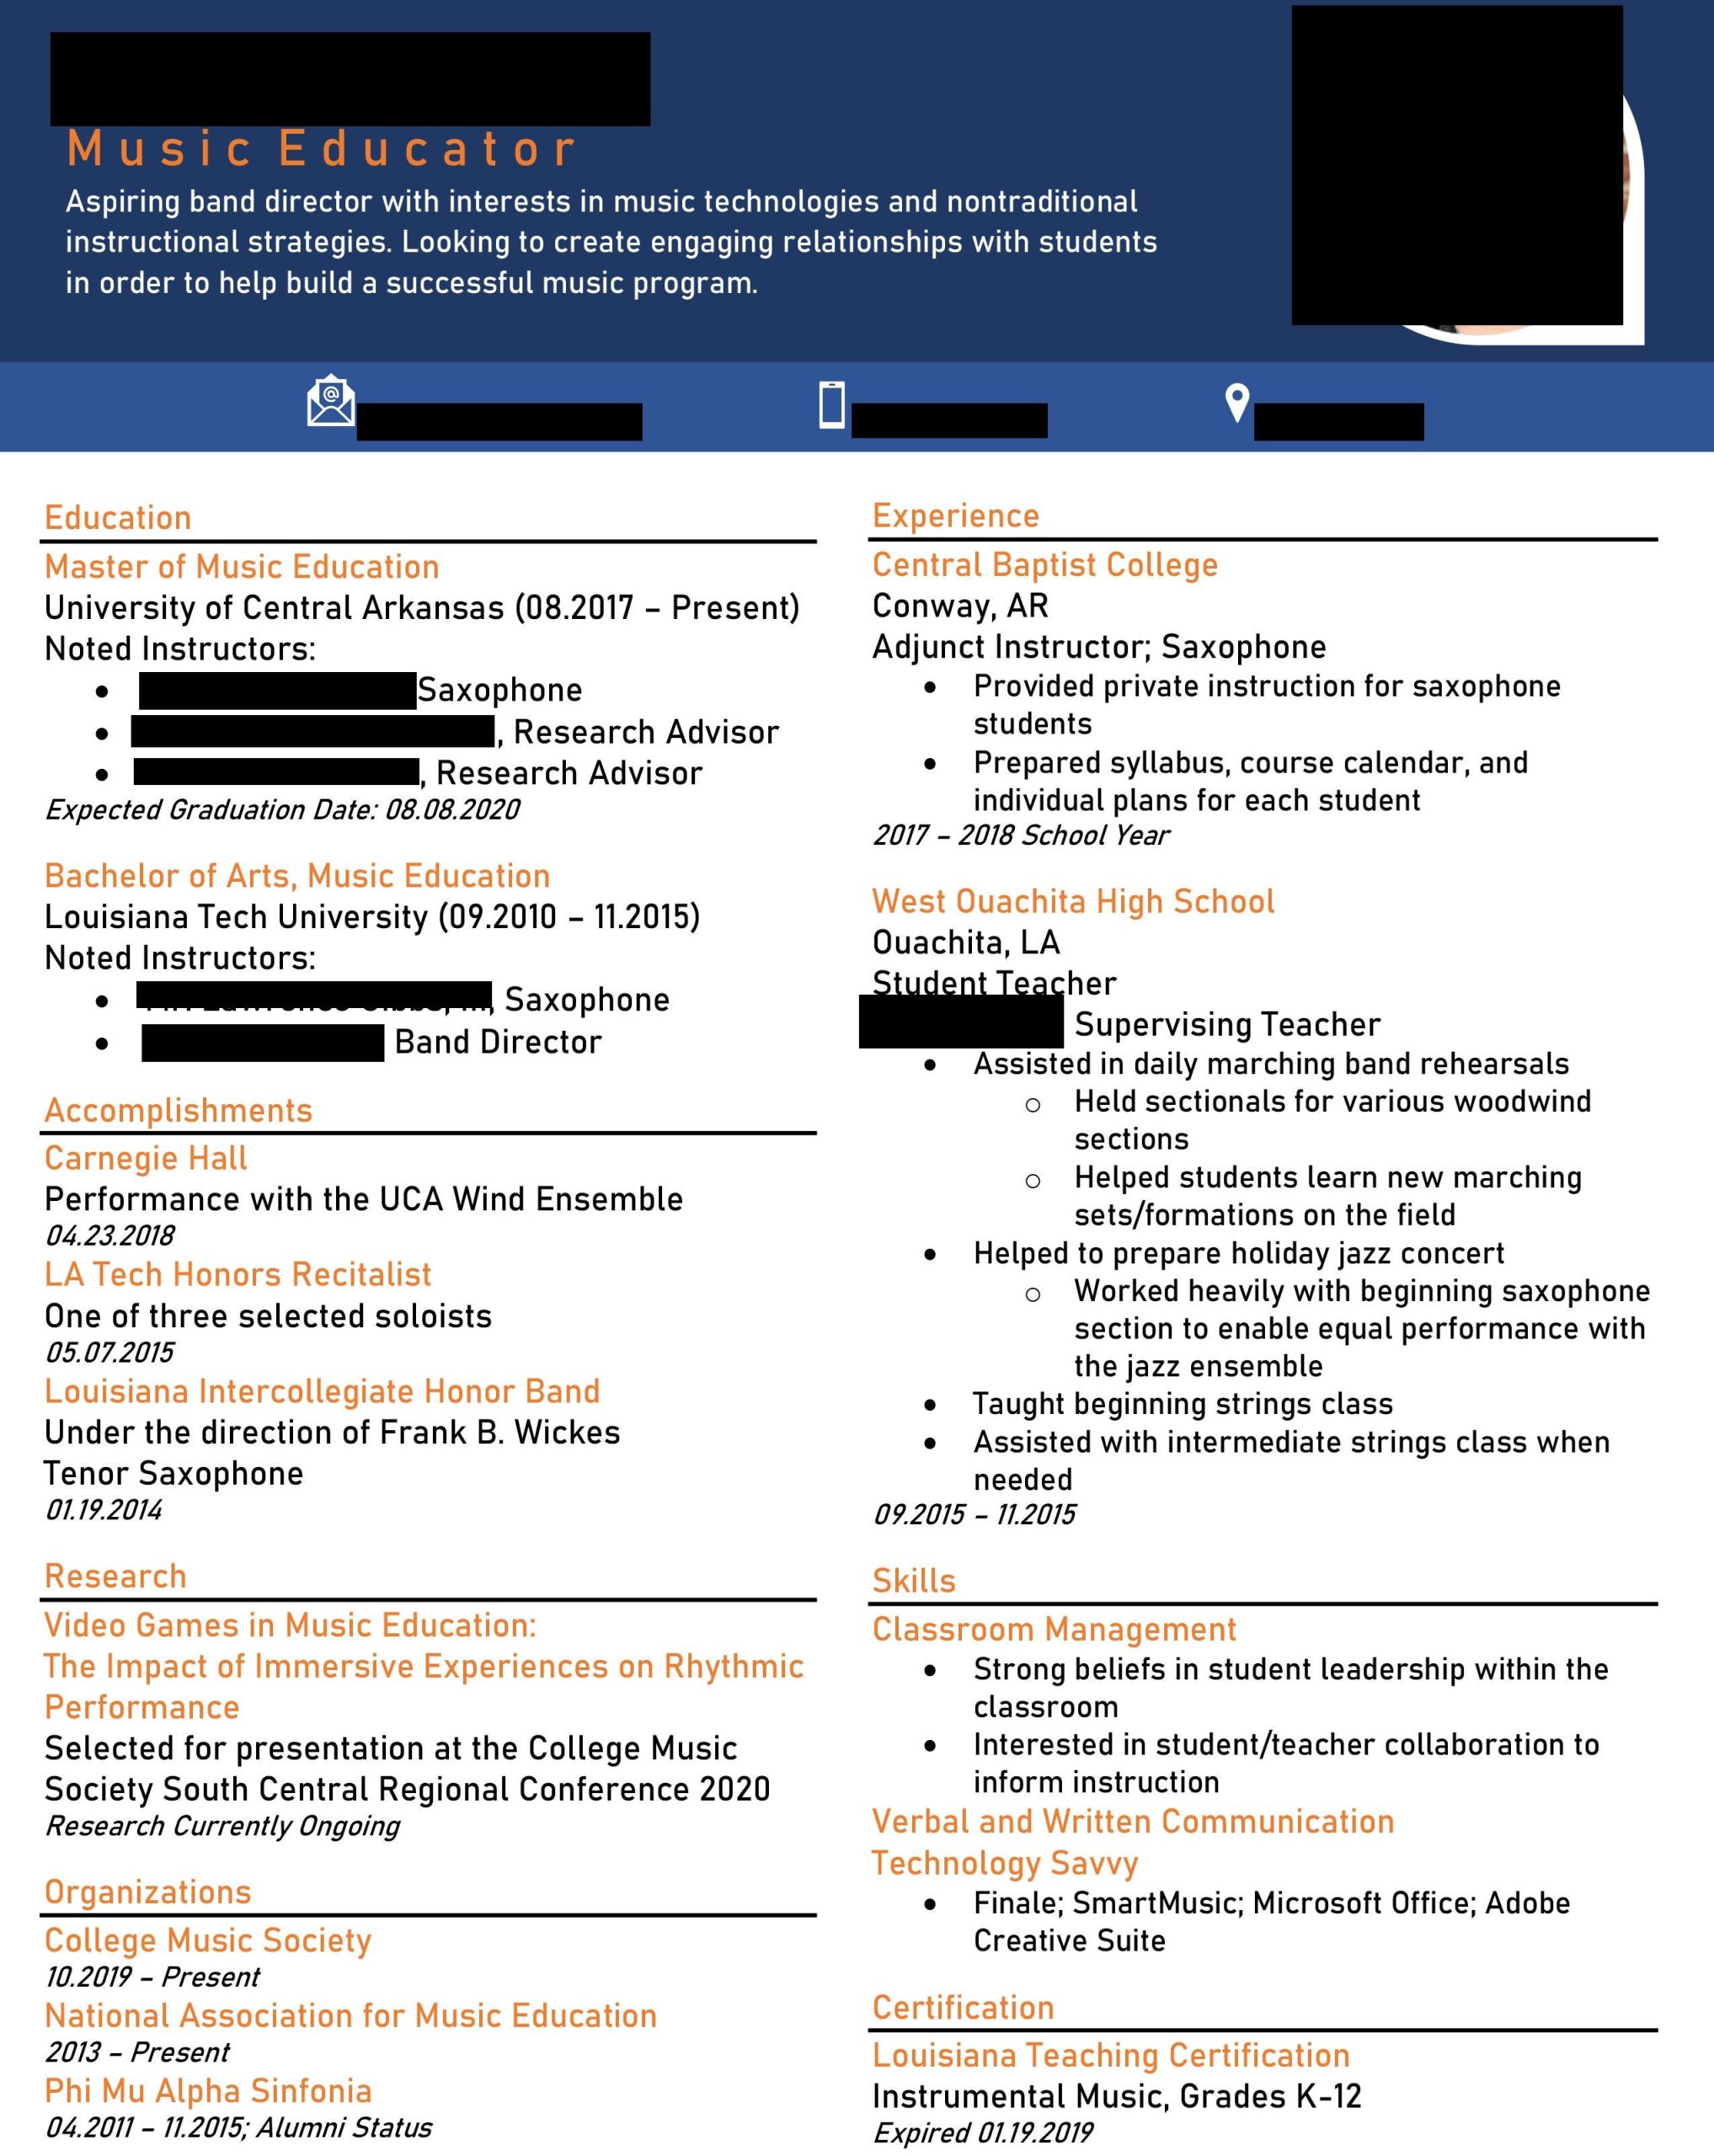 Cover Letter Resume Teacher Sample Reddit Beginning Teacher Resume : R/resumes